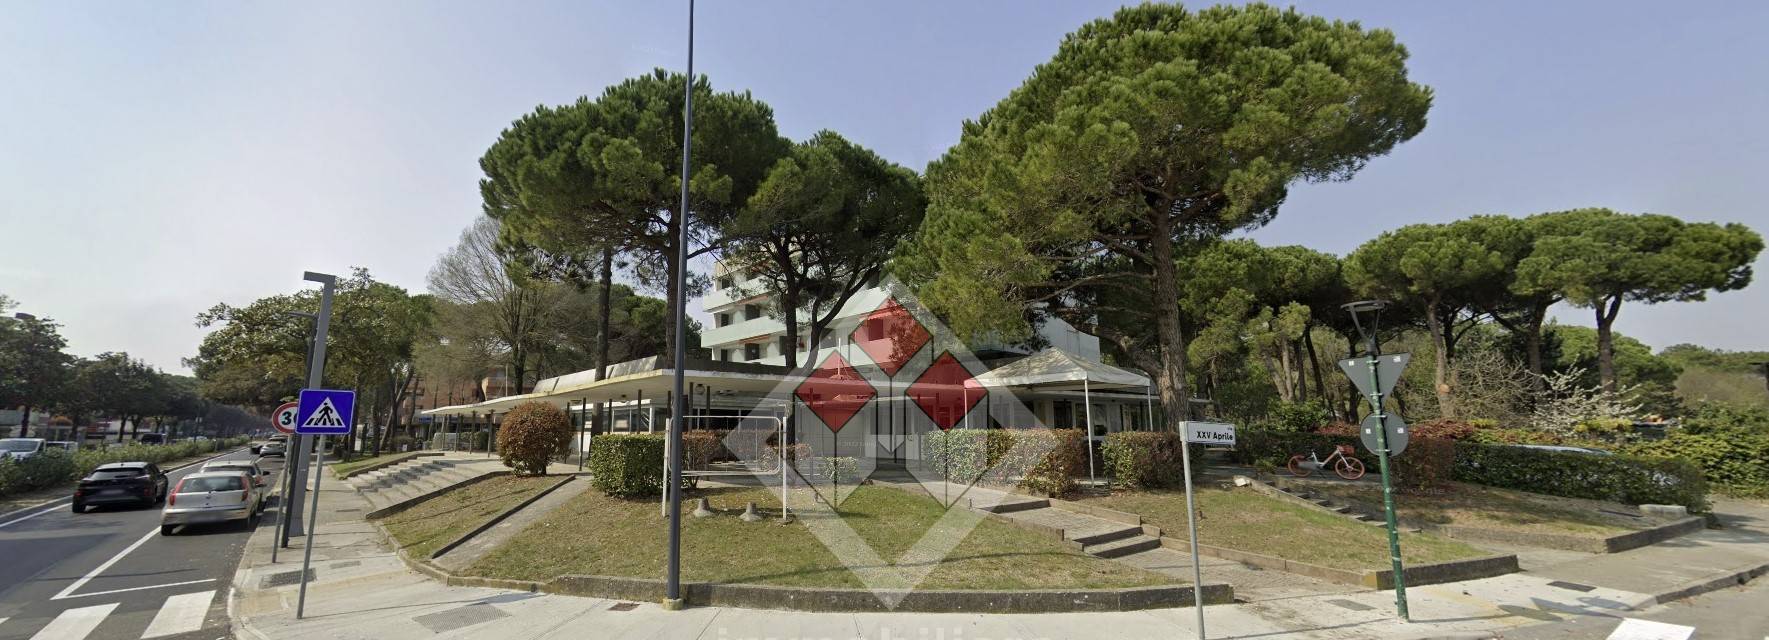 Appartamento in vendita a Lignano Sabbiadoro, 1 locali, zona Località: LignanoPineta, prezzo € 147.000 | PortaleAgenzieImmobiliari.it